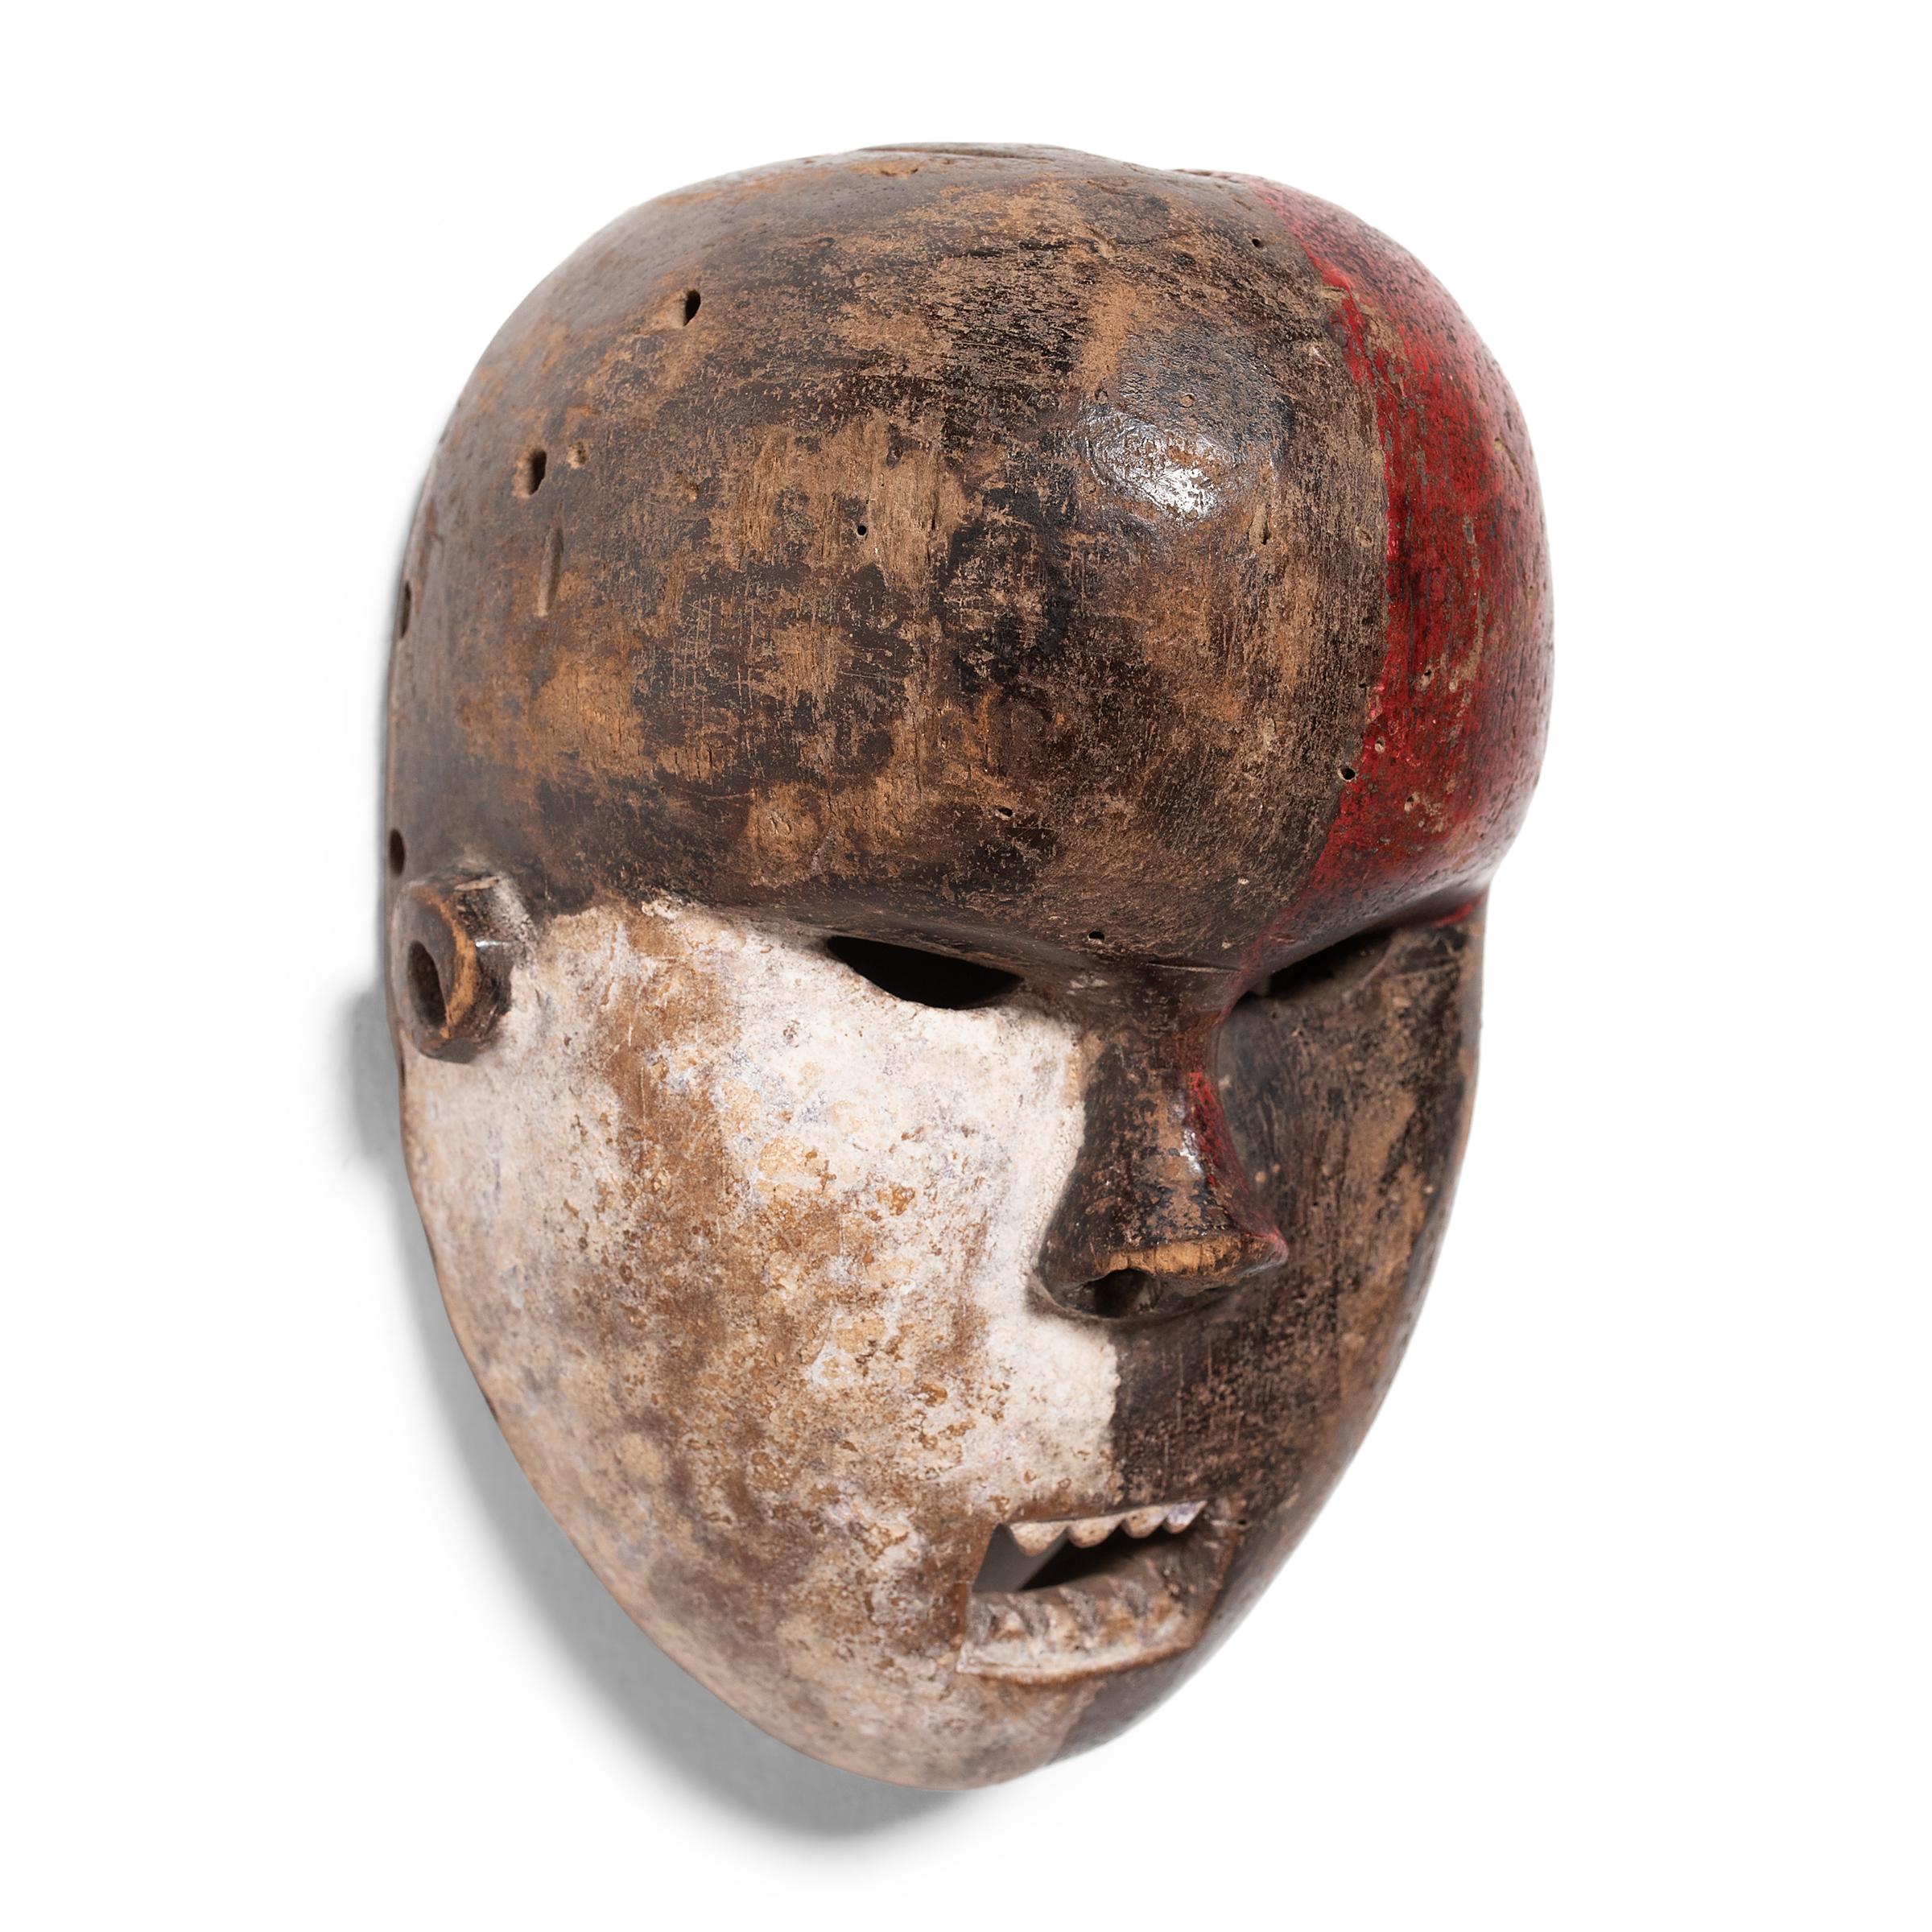 Diese zeremonielle afrikanische Maske ist in kontrastierende Farbtöne unterteilt und wird mit dem Volk der Salampasu in Verbindung gebracht, einer ethnischen Gruppe der Bantu, die hauptsächlich in der Demokratischen Republik Kongo beheimatet ist.